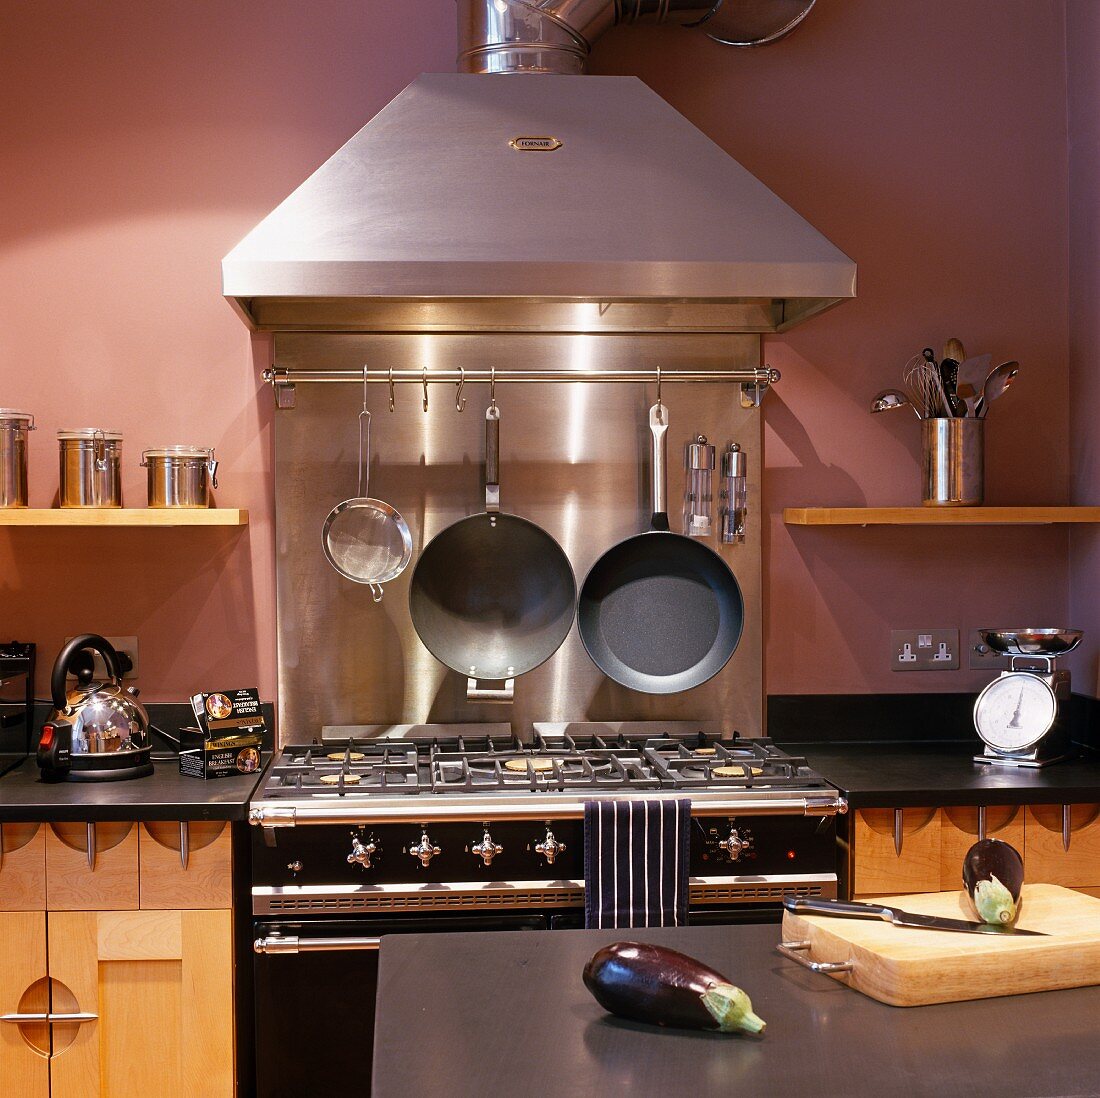 Gasherd im Vintagelook mit Edelstahl Dunstabzug an violett getönter Wand in moderner Küche